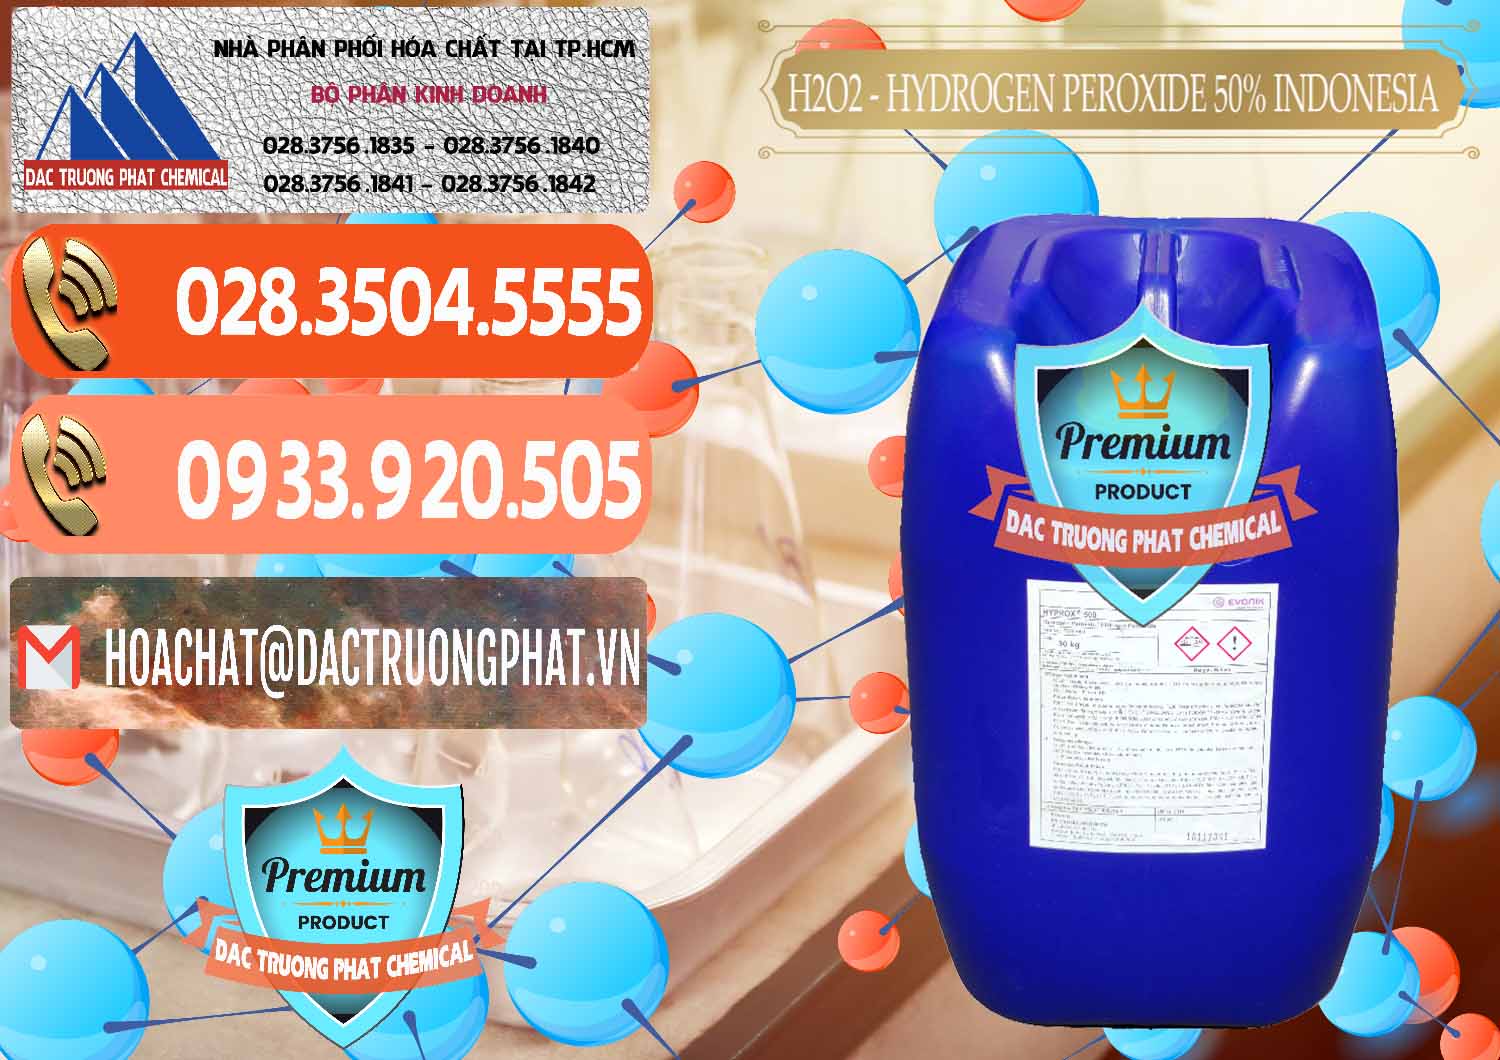 Cung cấp _ bán H2O2 - Hydrogen Peroxide 50% Evonik Indonesia - 0070 - Công ty chuyên phân phối _ cung ứng hóa chất tại TP.HCM - hoachatmientay.com